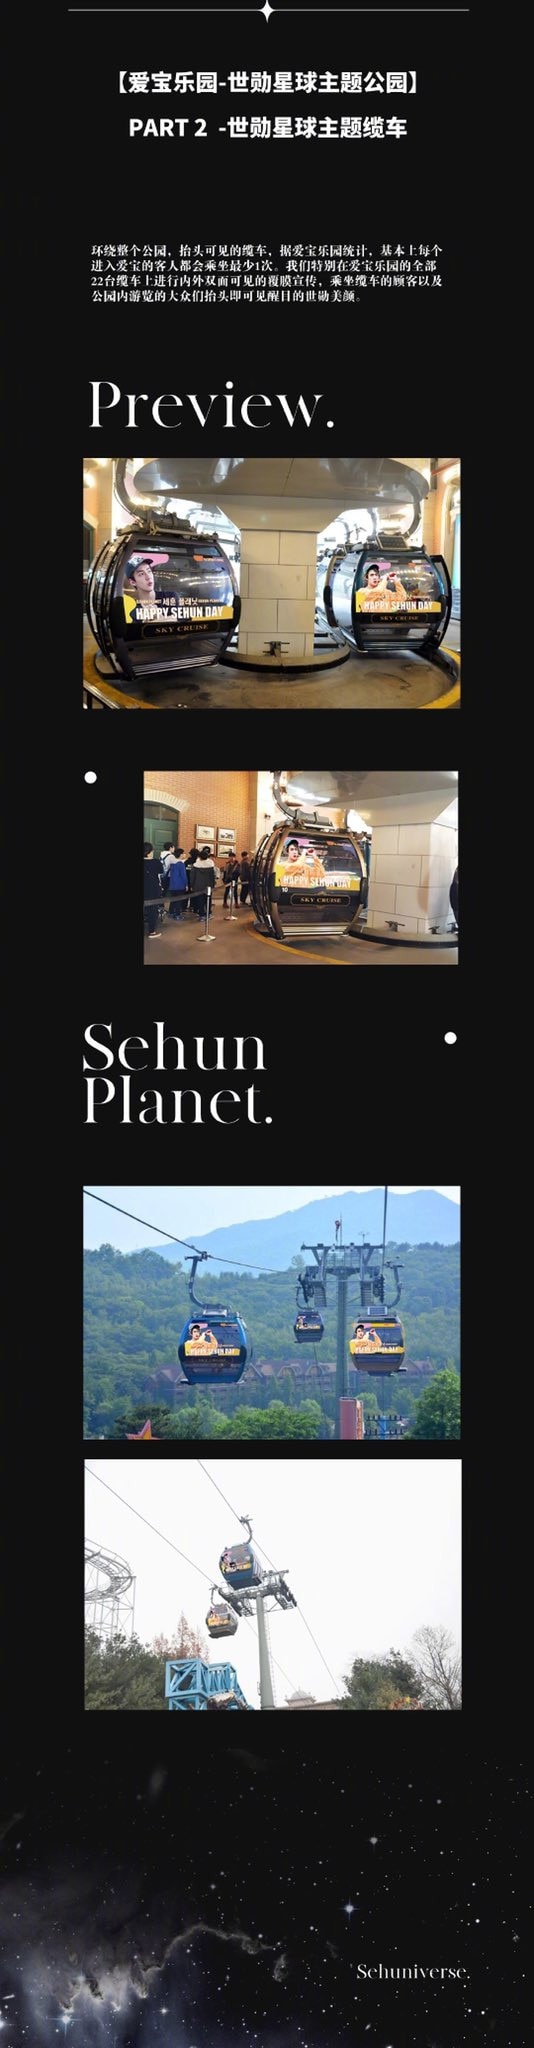 Fan chịu chơi tạo cả 'Sehun Planet' để tặng em út nhà EXO nhân dịp sinh nhật 3